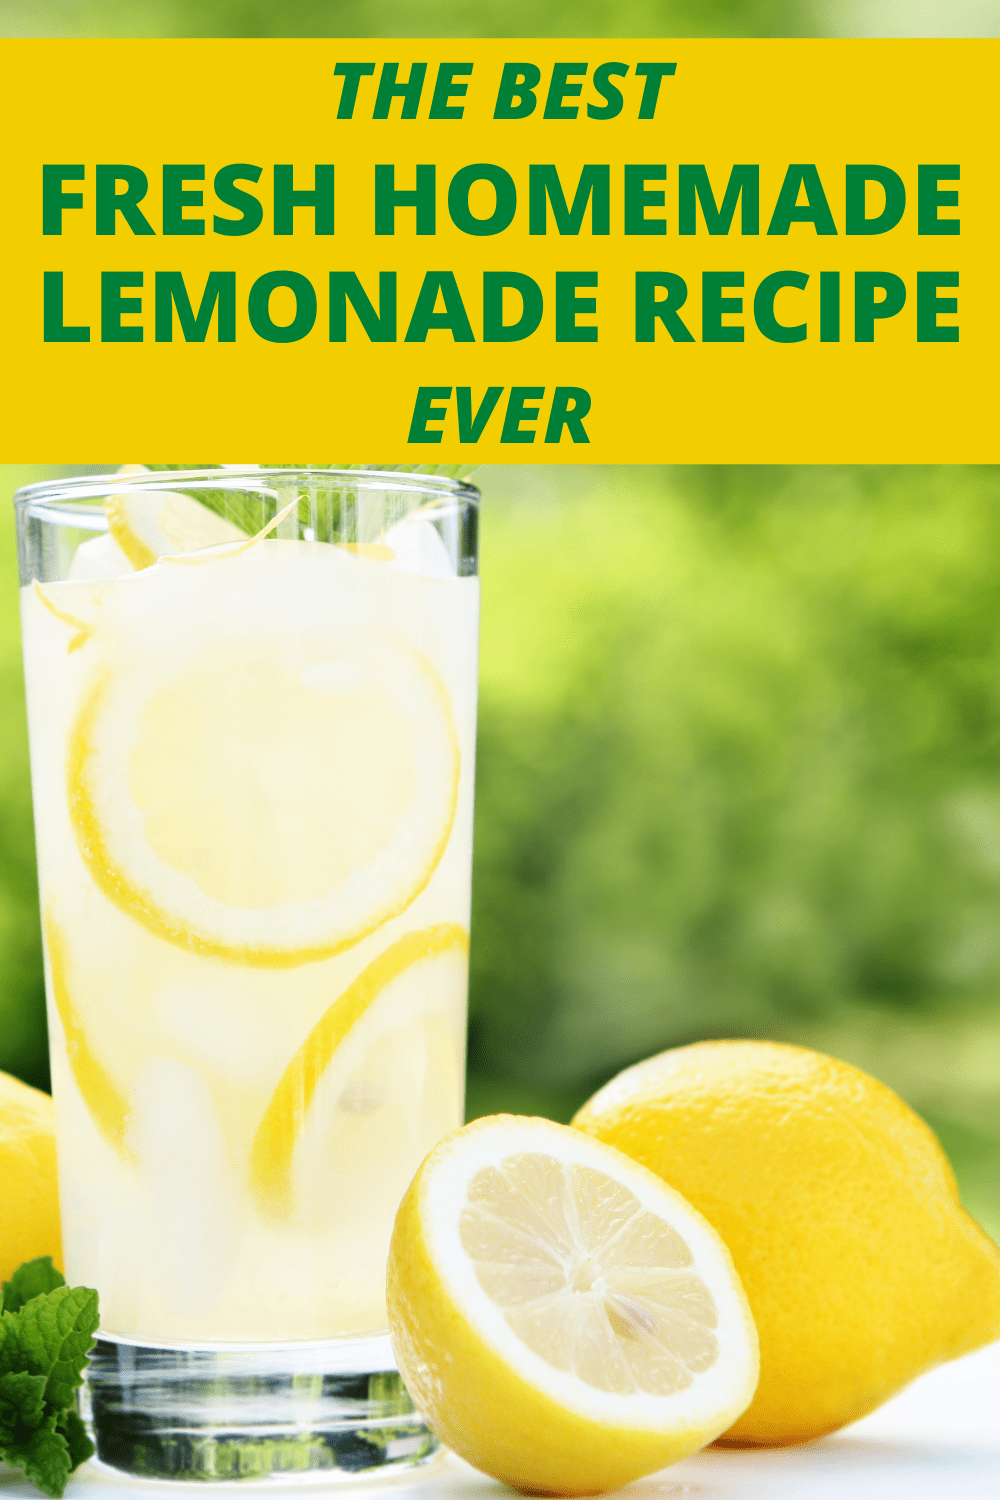 LEMONADE RECIPE HOMEMADE with lemons on a table outside